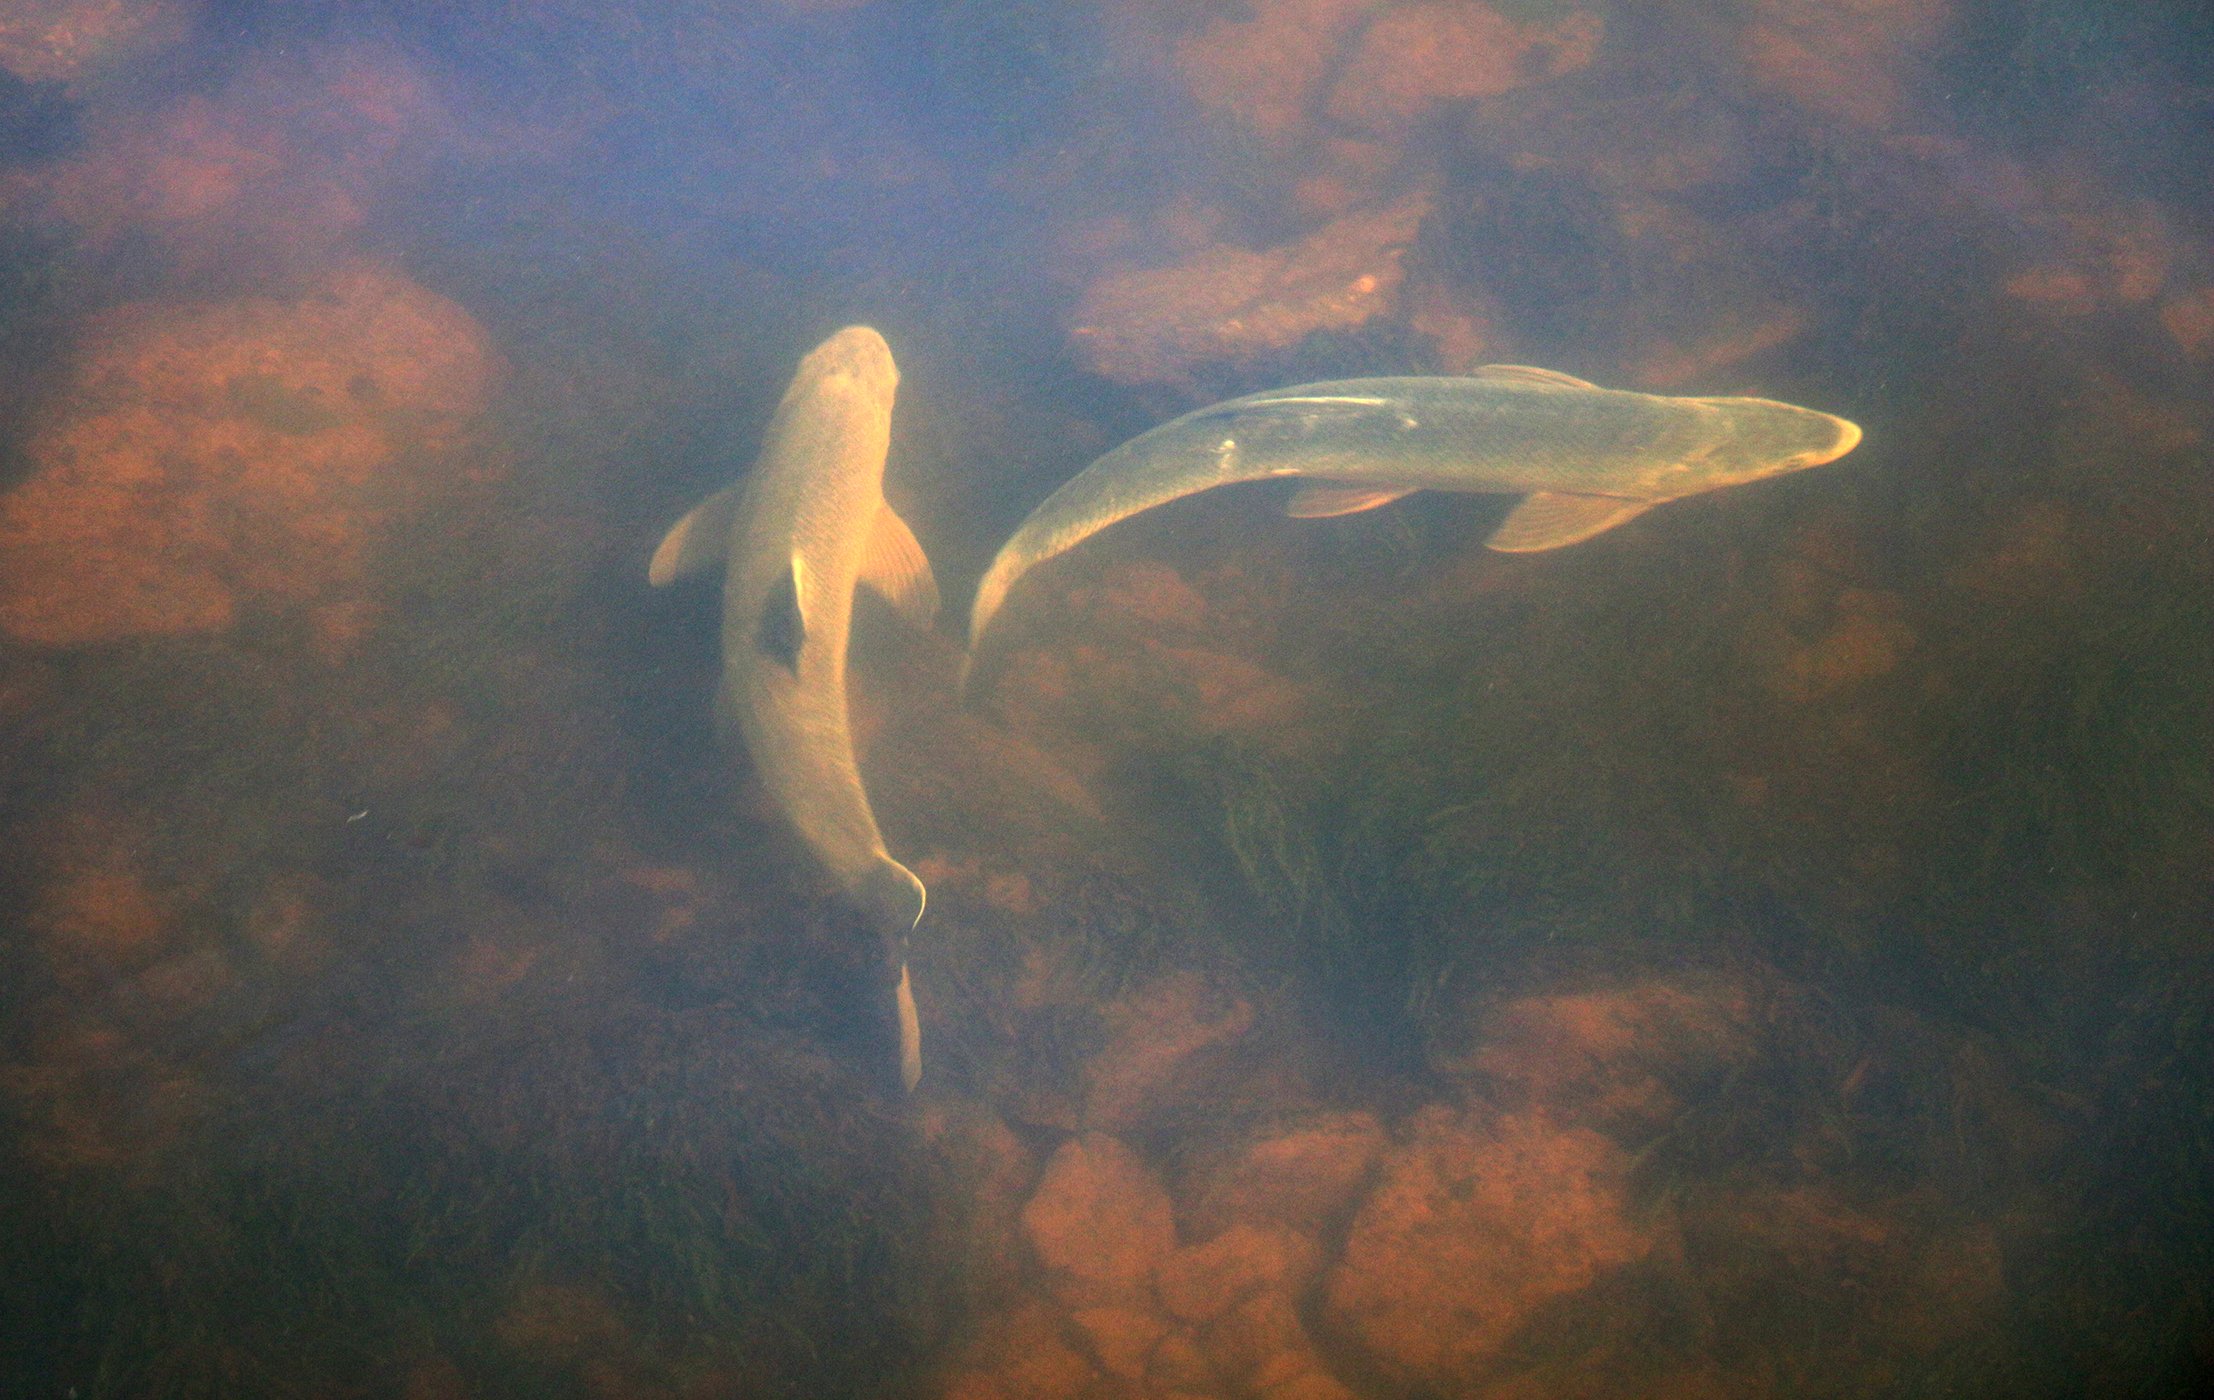 Två fiskar simmar nära varandra.